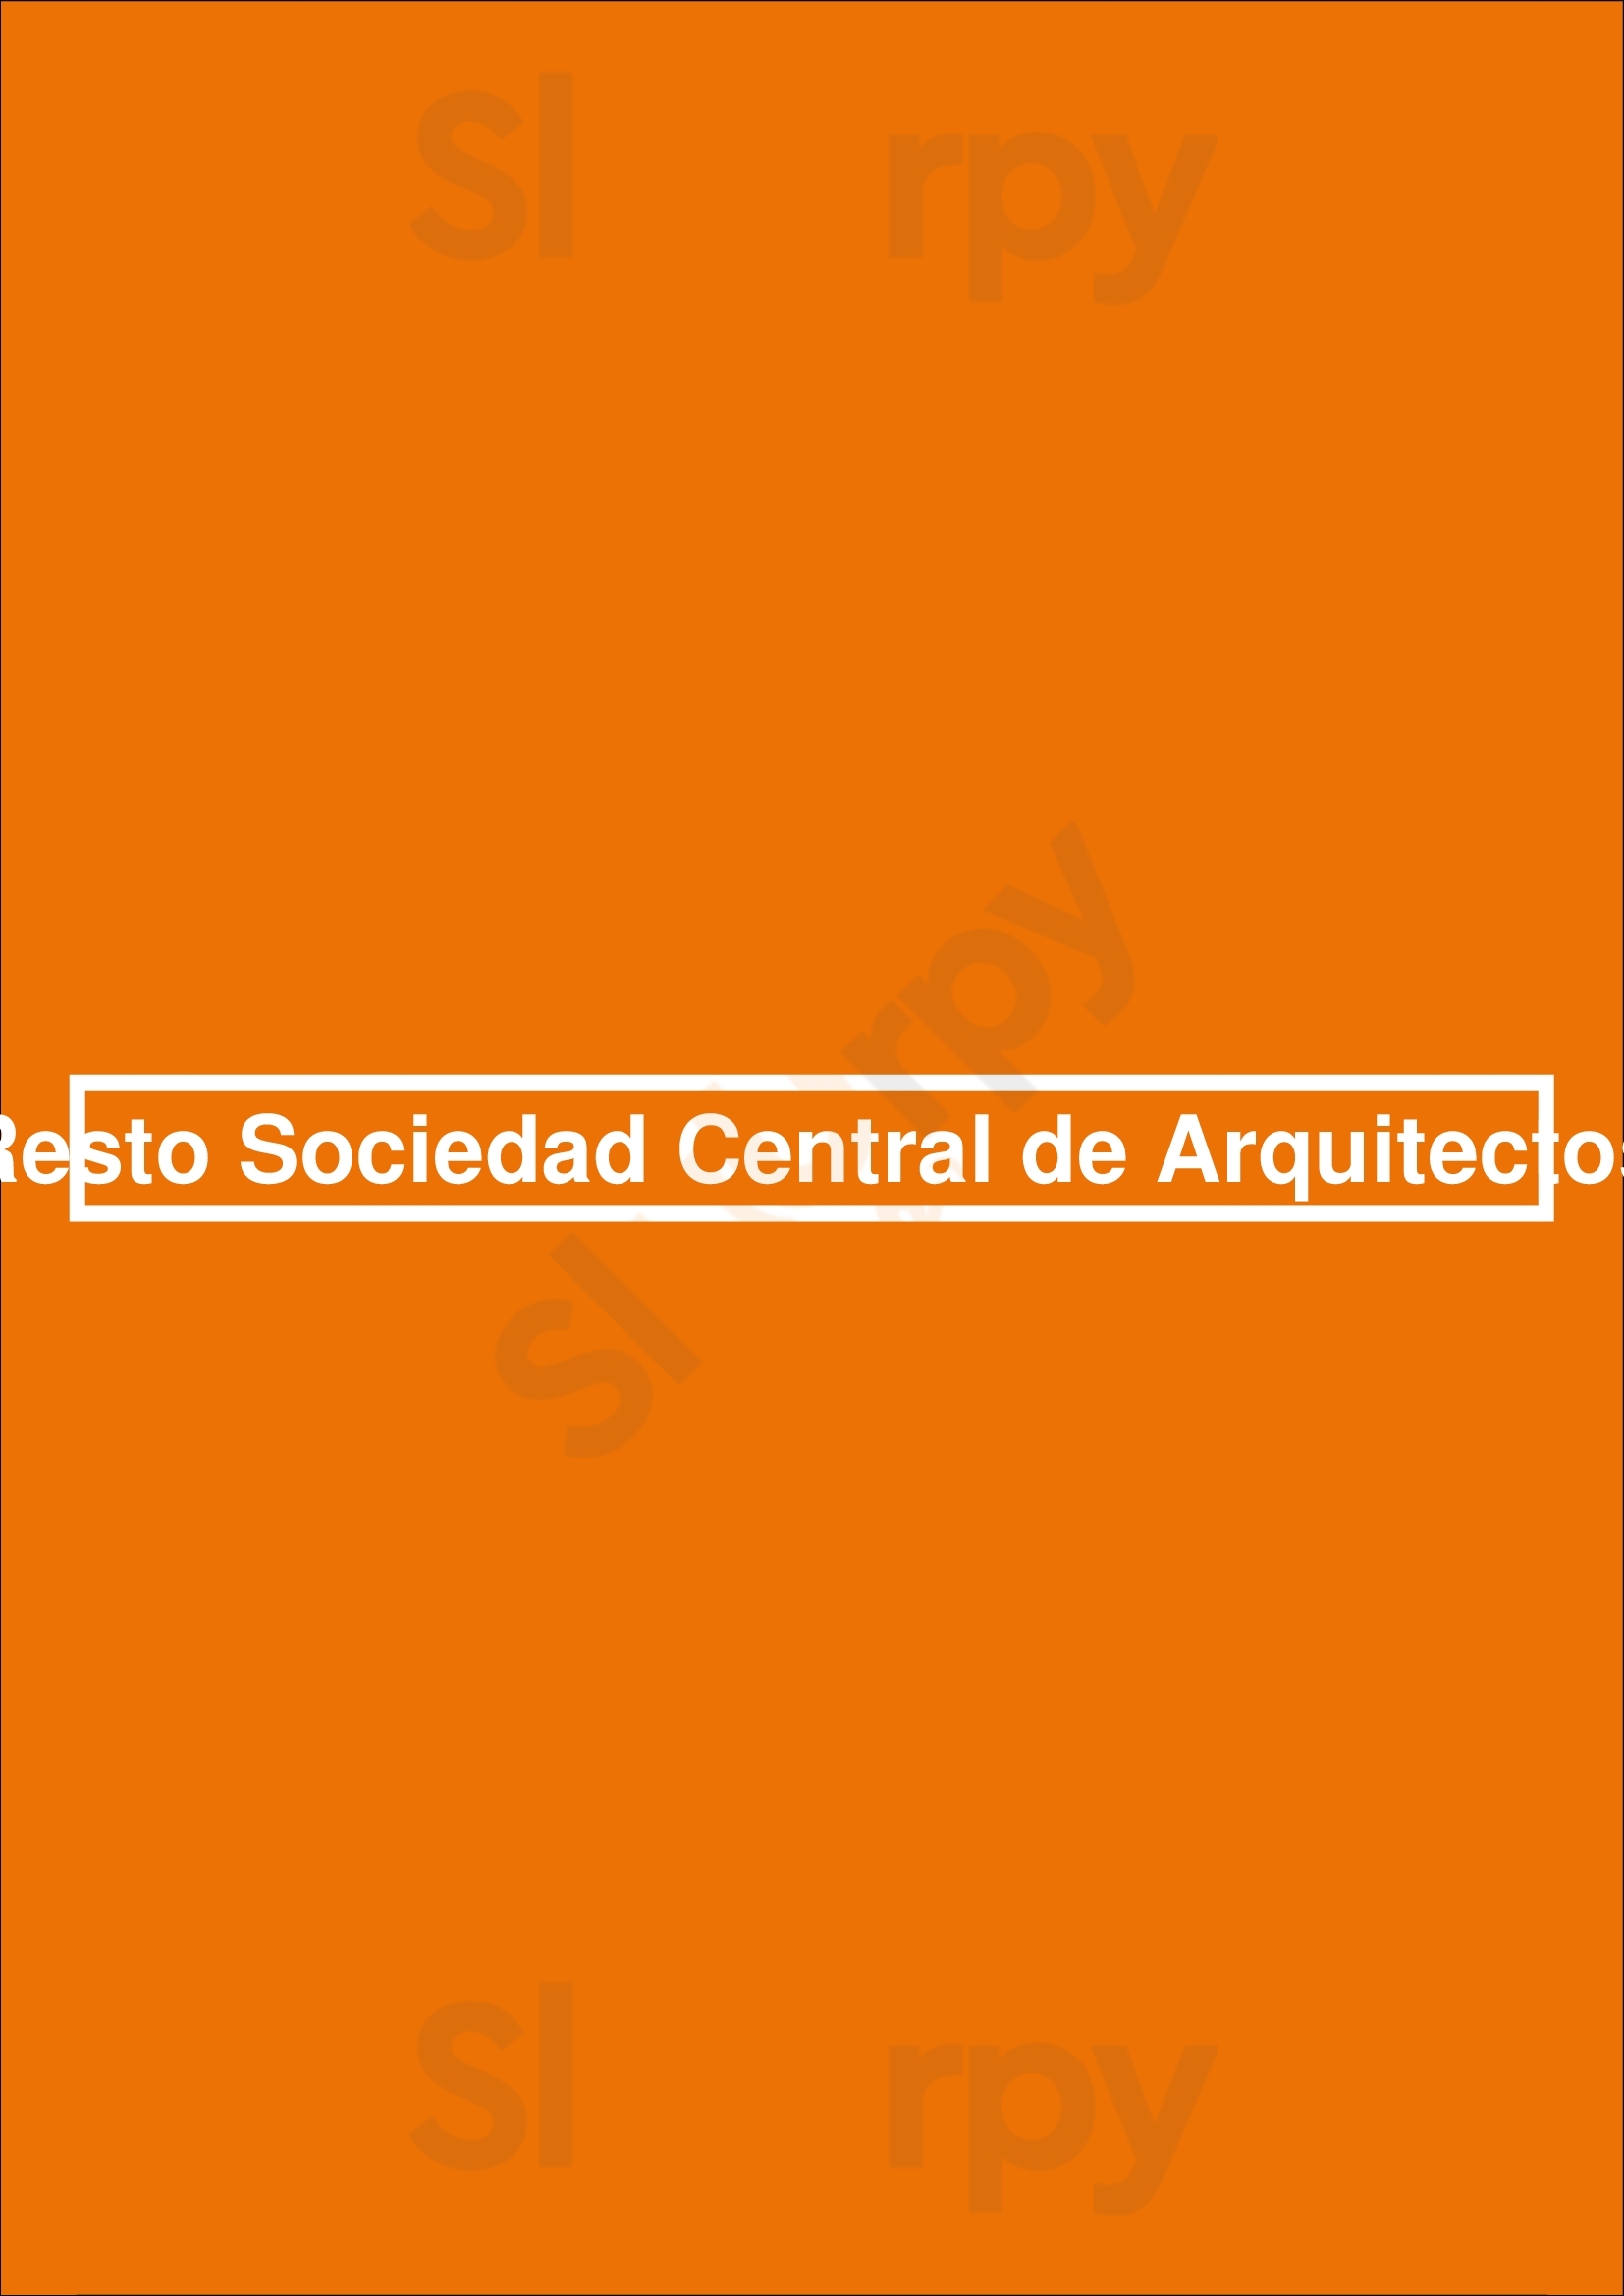 Resto Sociedad Central De Arquitectos Buenos Aires Menu - 1